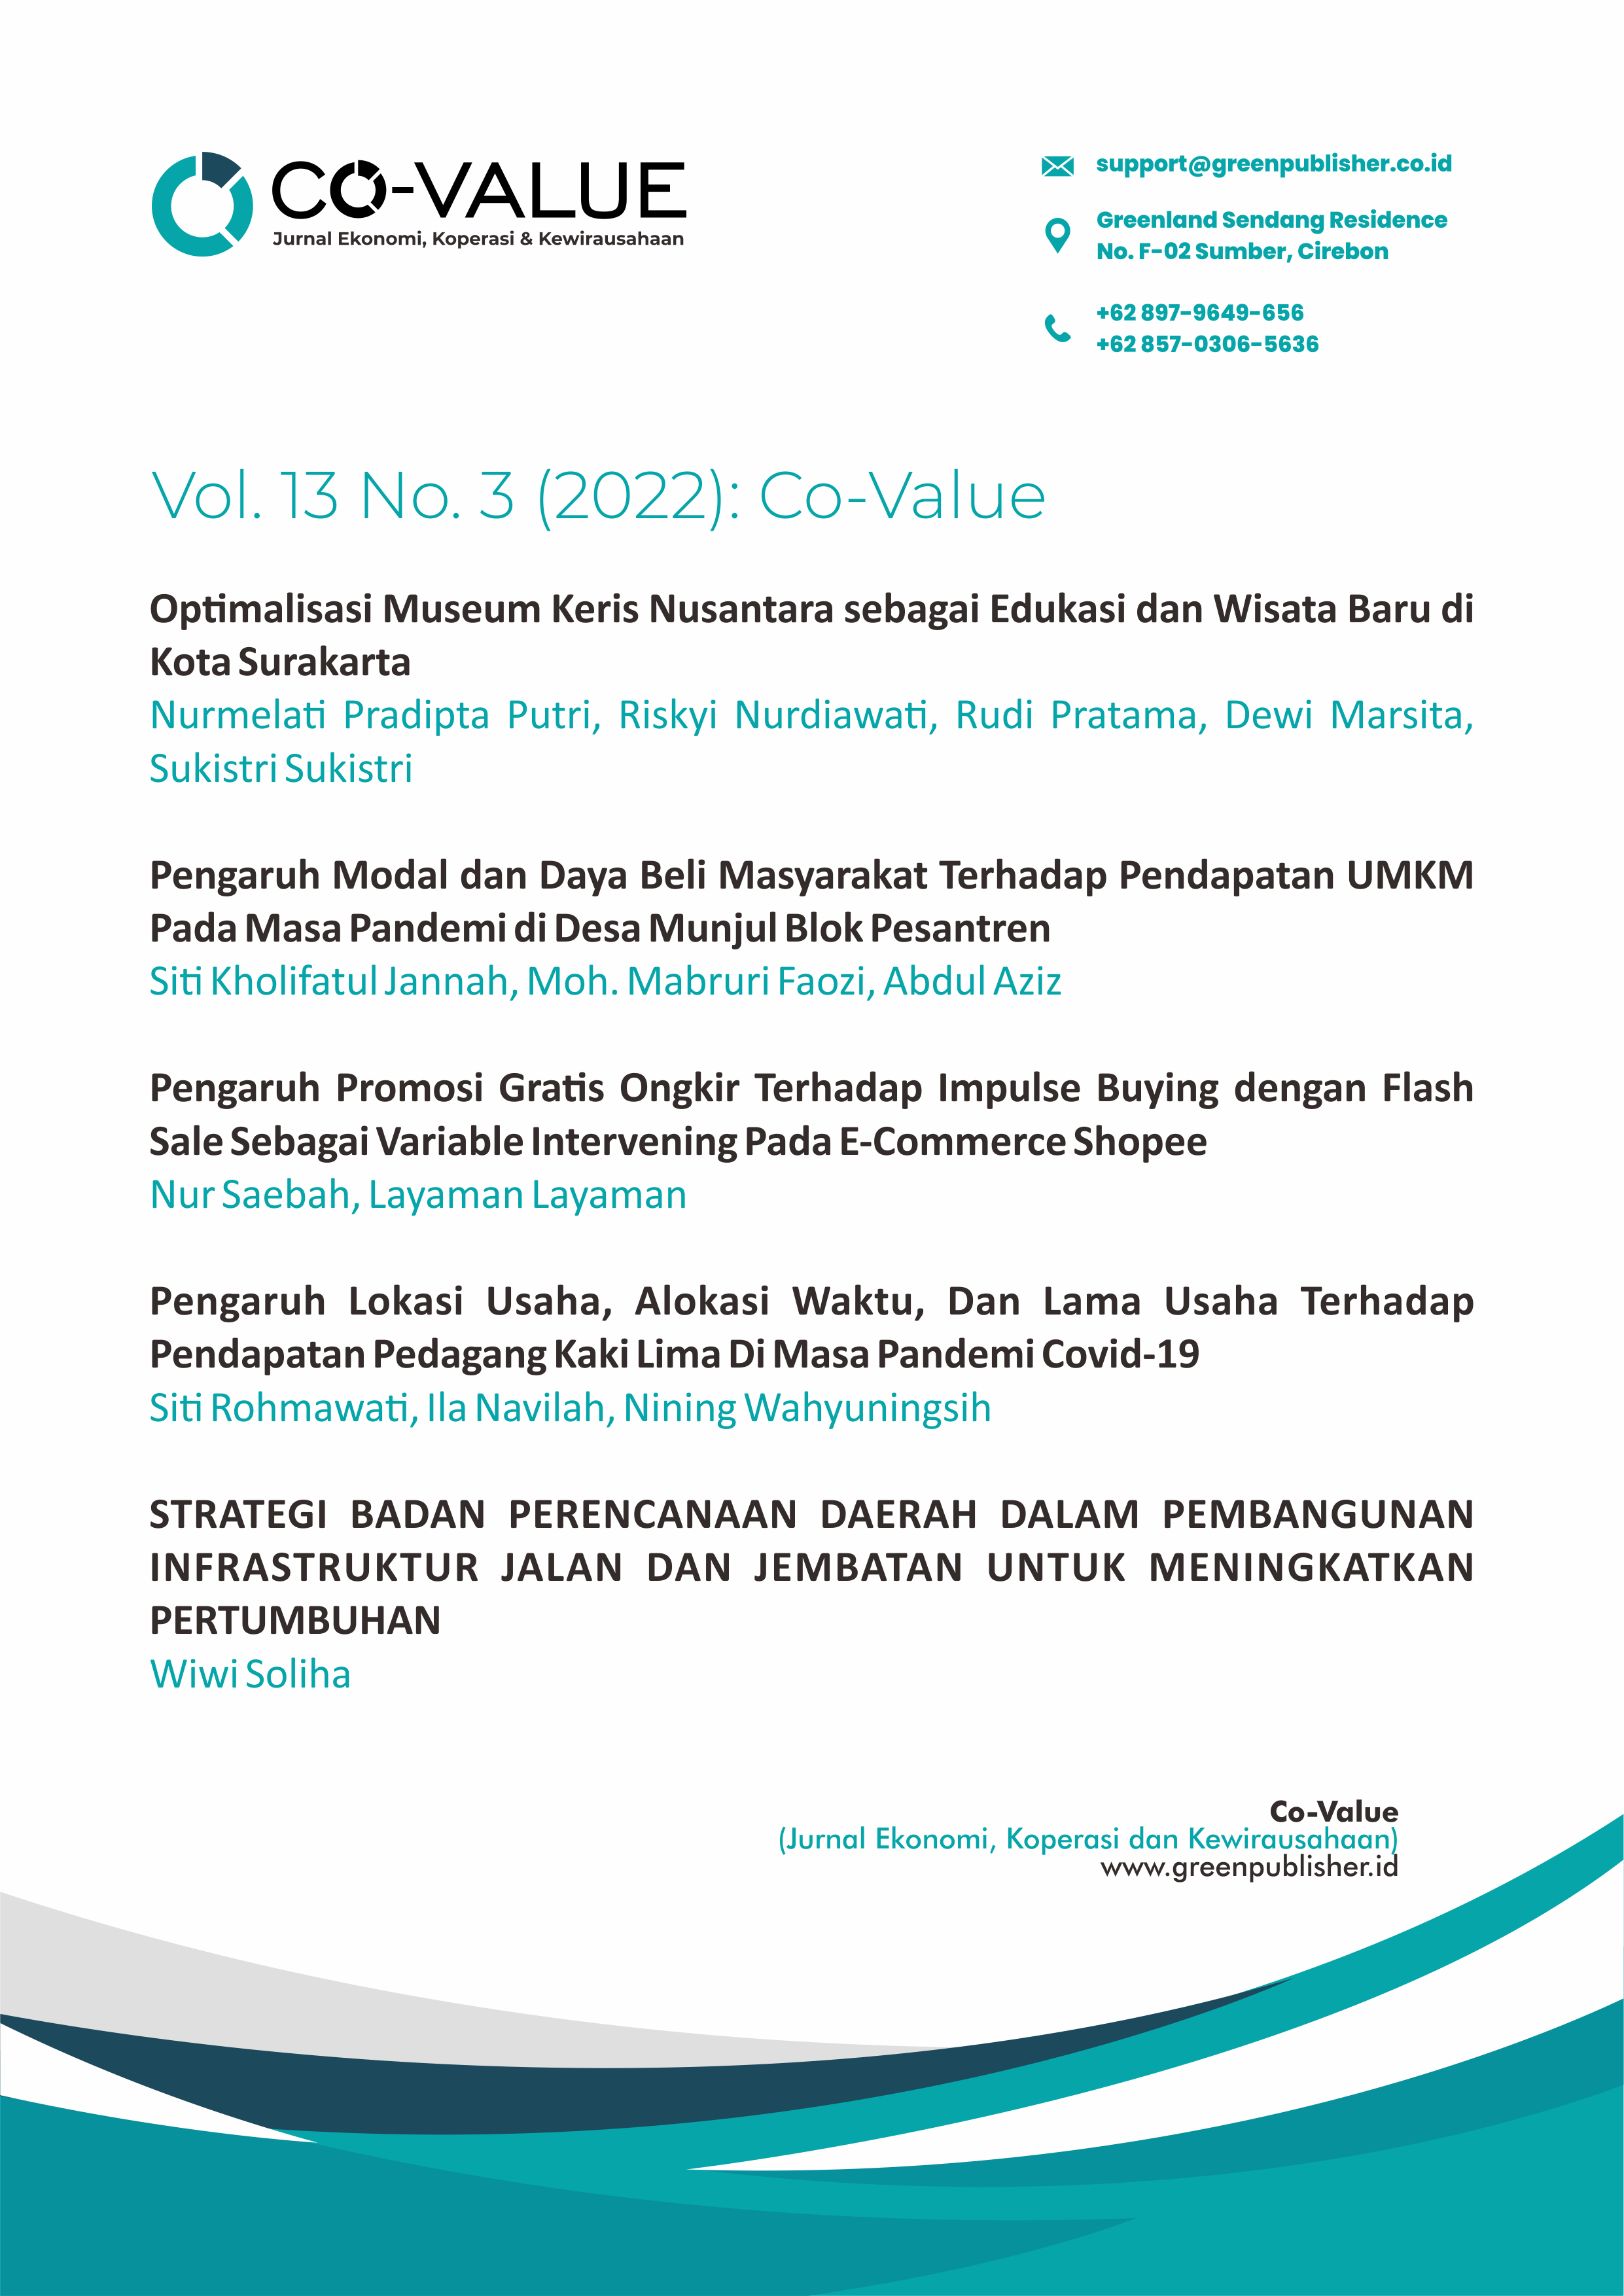 					View Vol. 13 No. 3 (2022): Co-Value : Jurnal Ekonomi, Koperasi, & Kewirausahaan
				